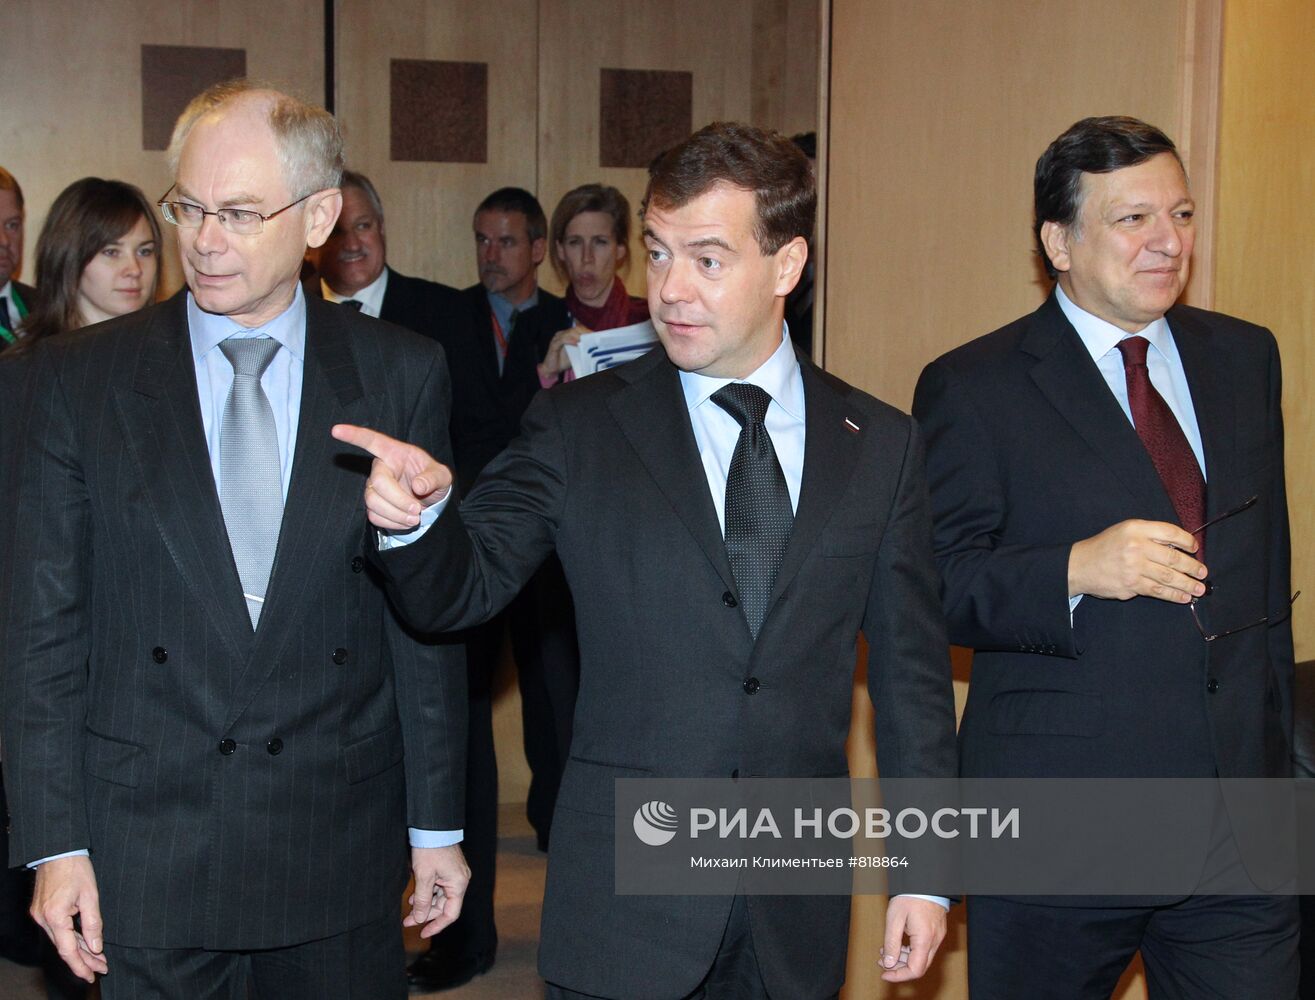 Д.Медведев прибыл в Брюссель на саммит РФ-ЕС